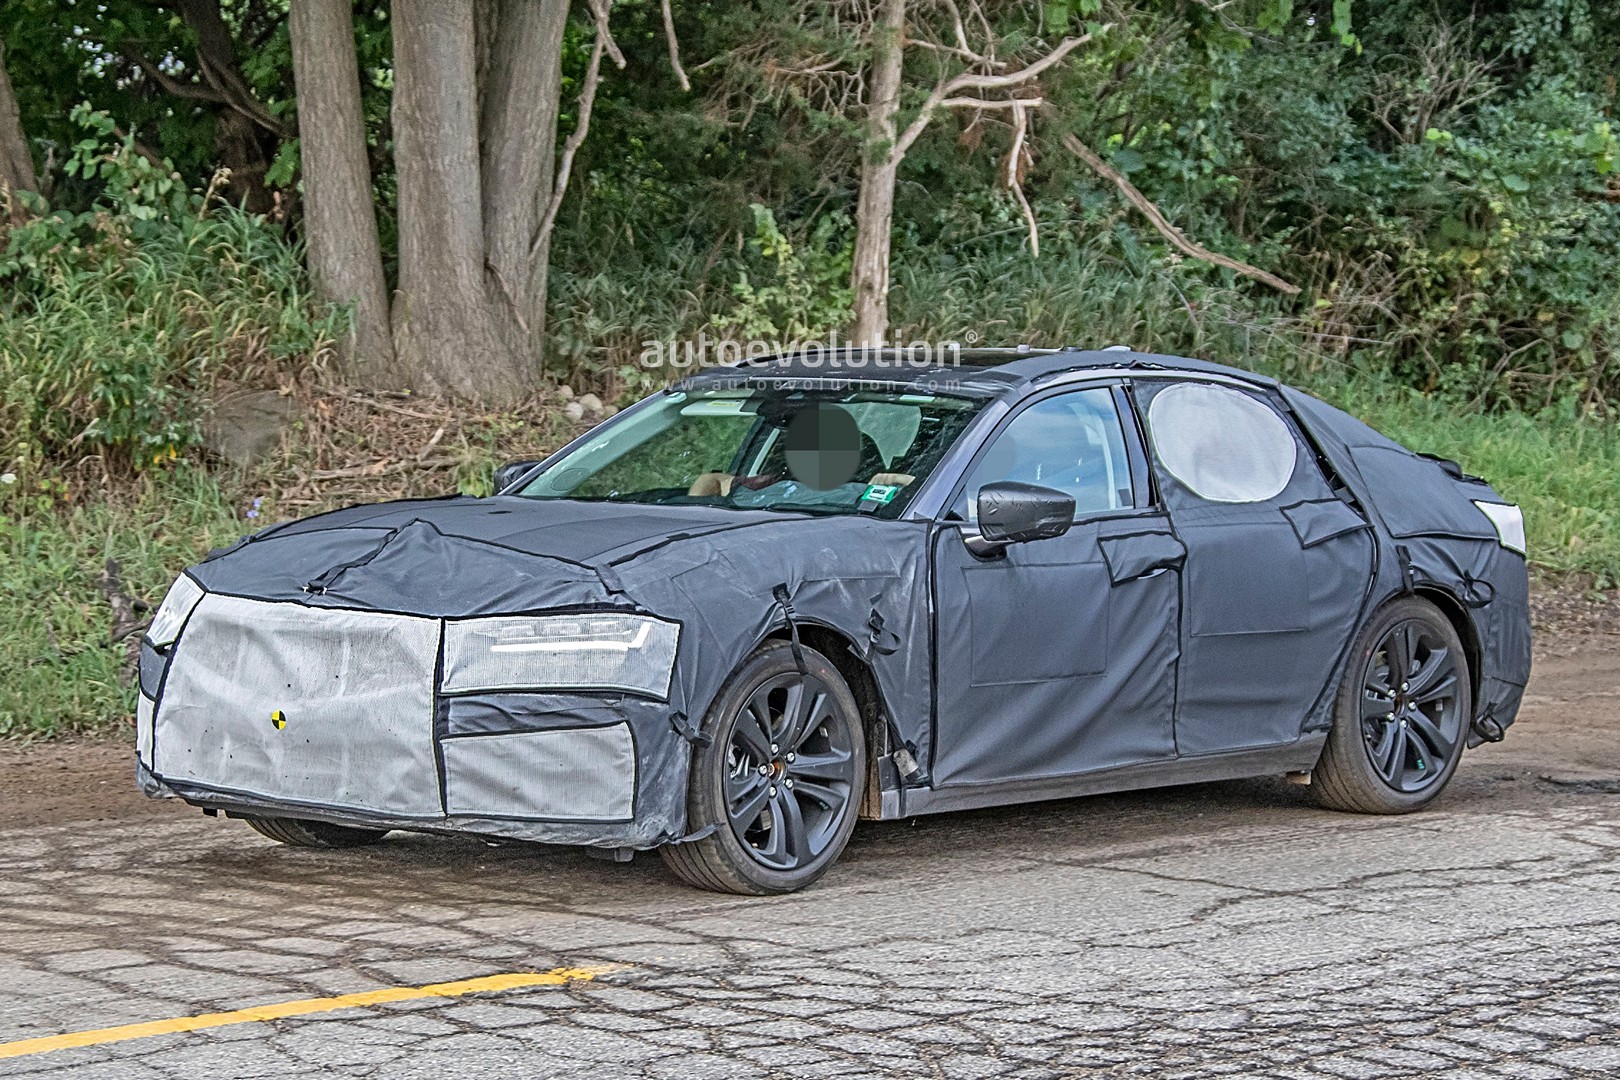 2021 Acura TLX Sedan Spied Testing, Looks Like Type S ...